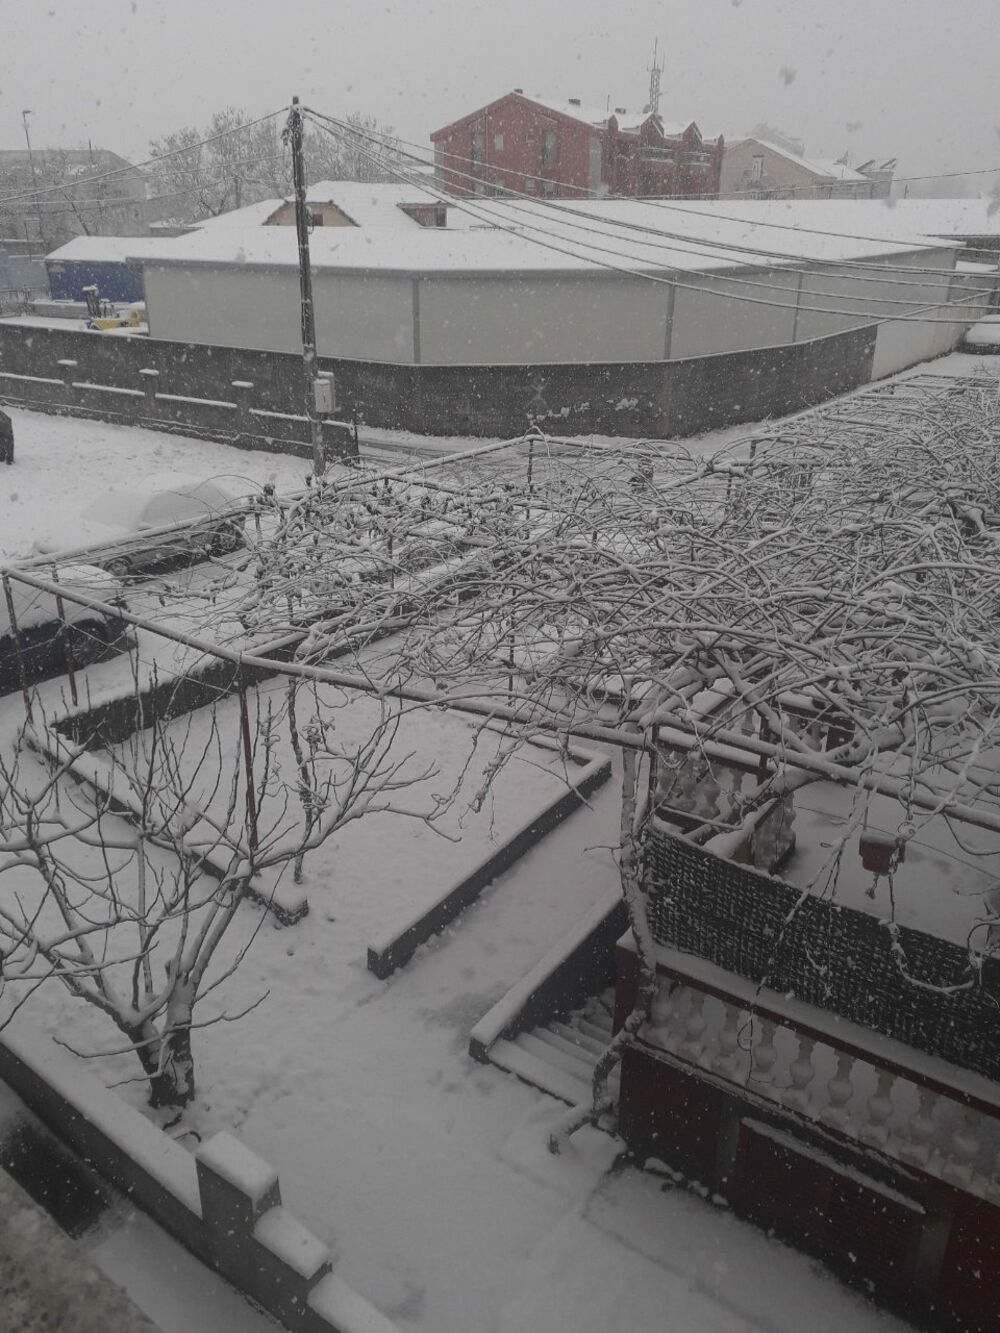 Prve pahulje su obradovale građane Podgorice još 8. januara kasno naveče, a već 9. ujutru cijeli grad je bio pokriven. Pokažite nam kako vaš dio grada izgleda pod snijegom tako što ćete poslati fotke na mail portal@vijesti.me ili na našu FB ili Instagram stranicu!